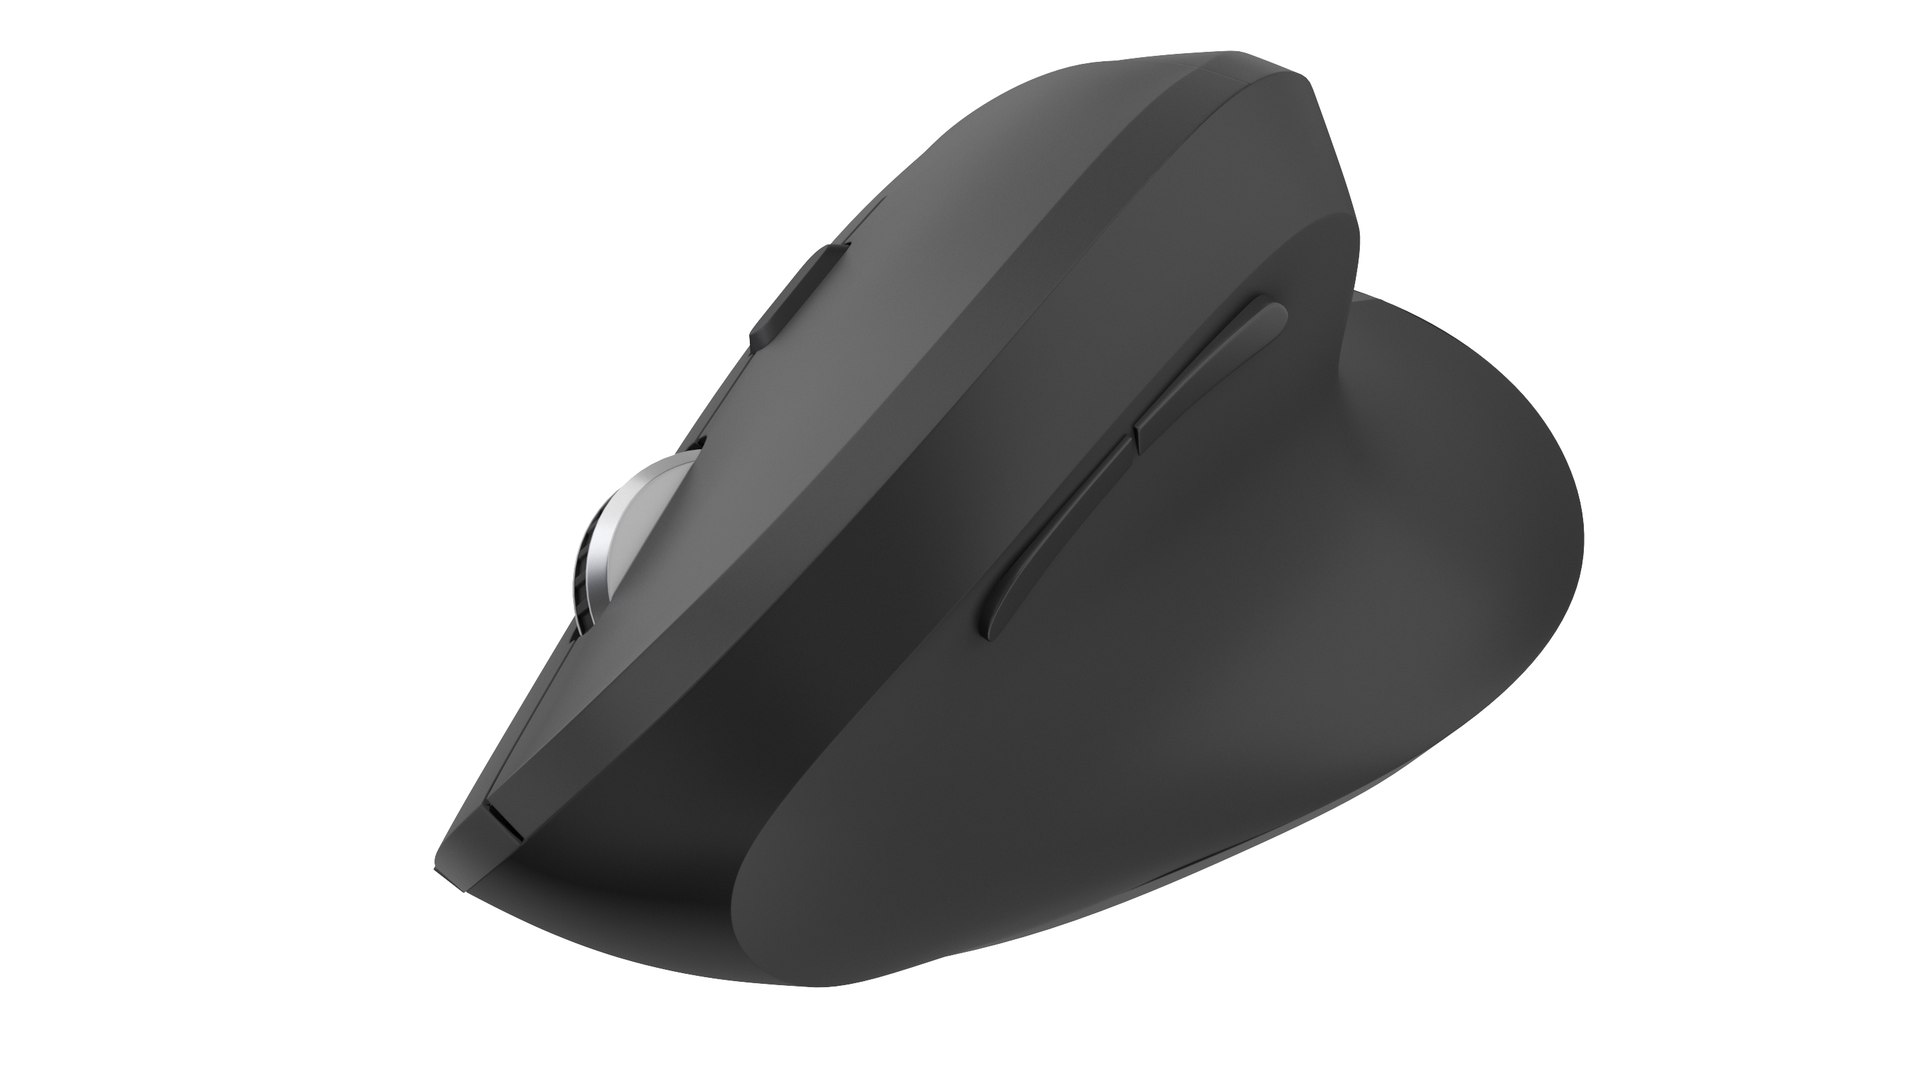 PC Ergonomic Mouse 3D Model - TurboSquid 2068779